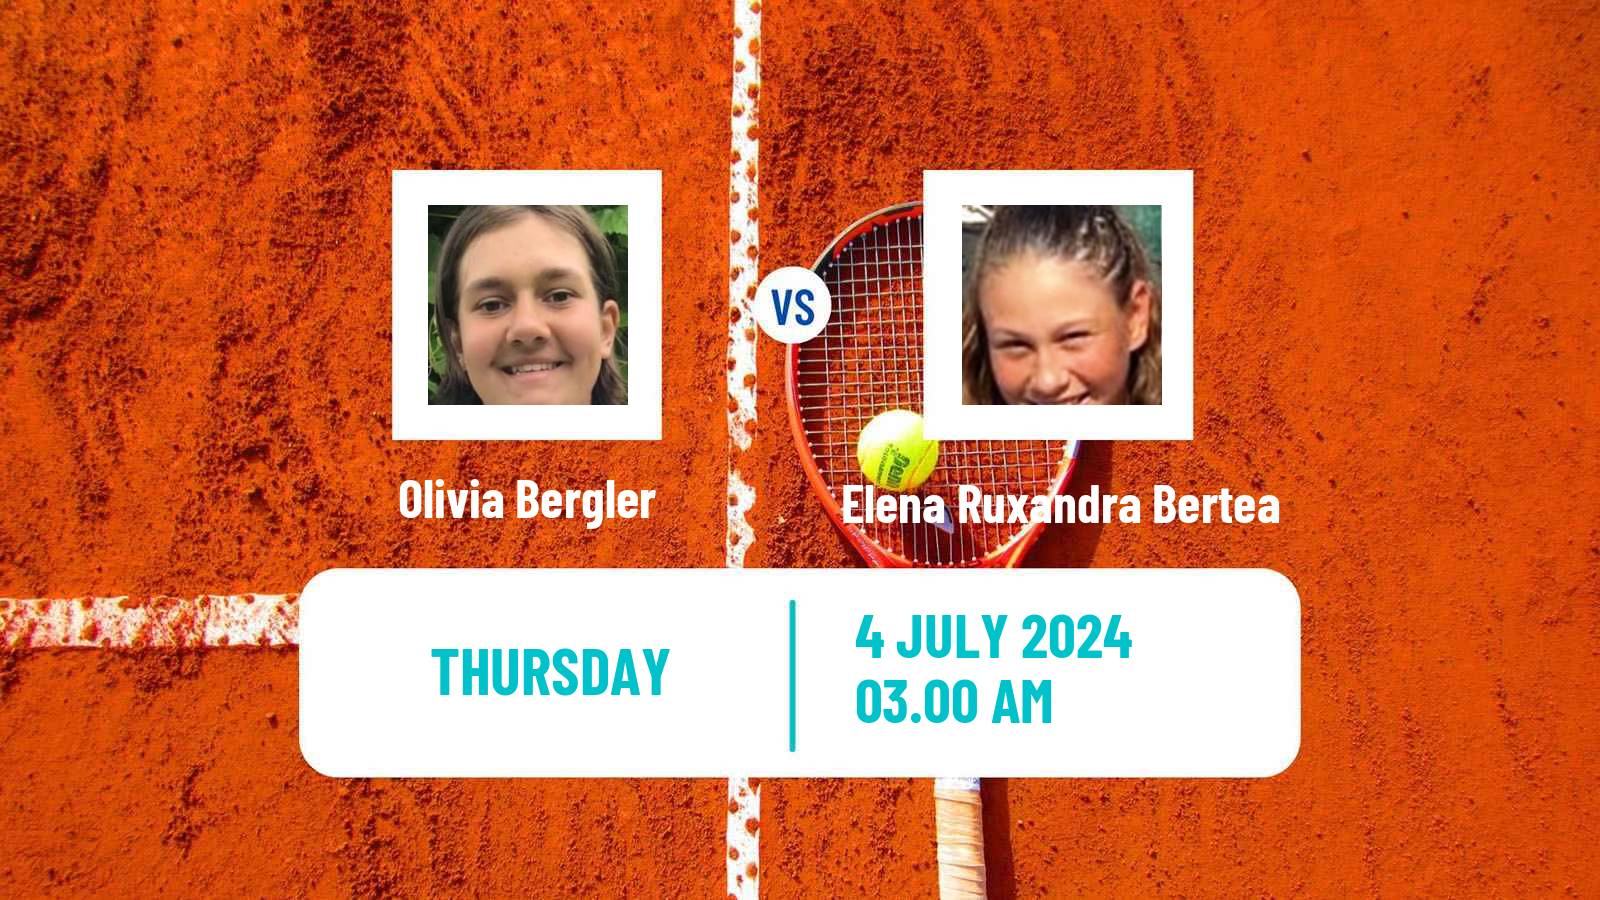 Tennis ITF W15 Galati 2 Women Olivia Bergler - Elena Ruxandra Bertea